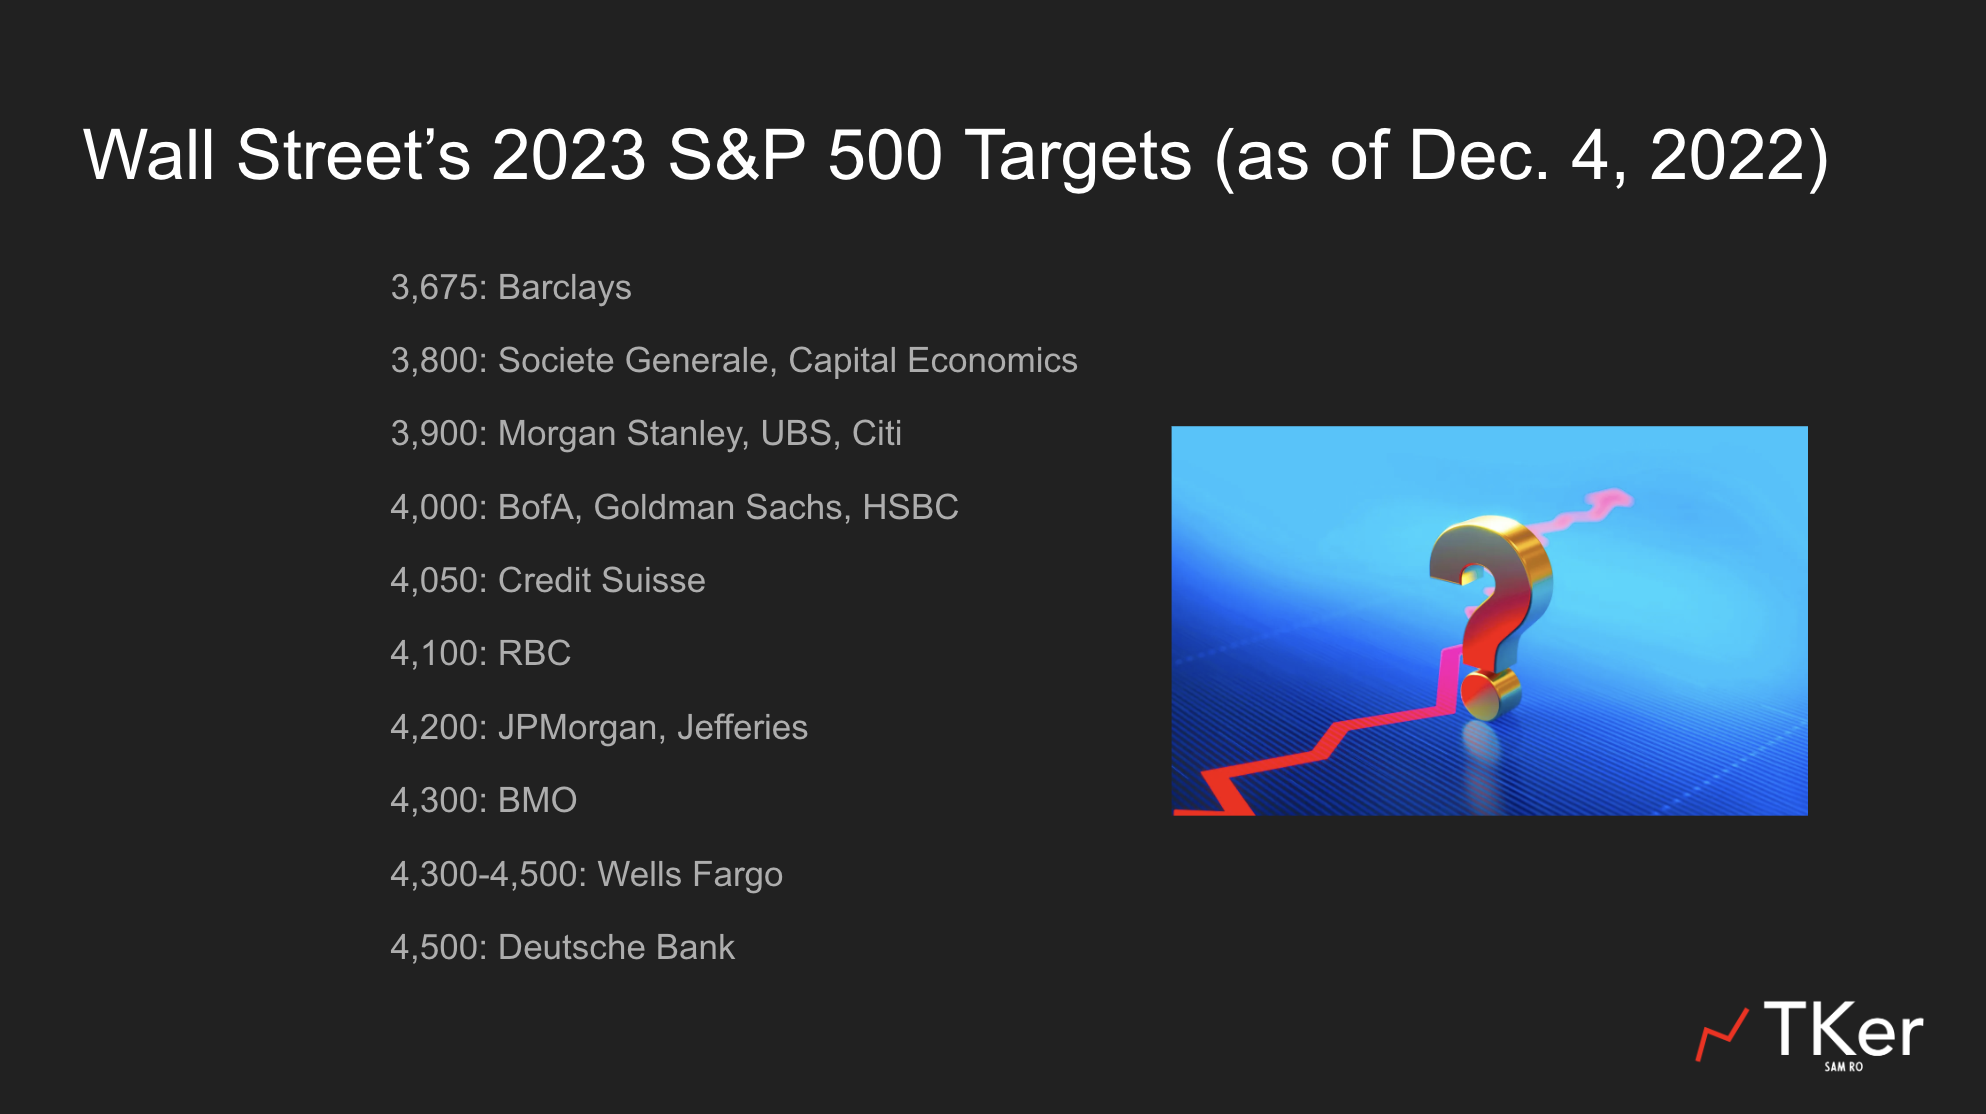 Bankernes forventninger til 2023 - overblik